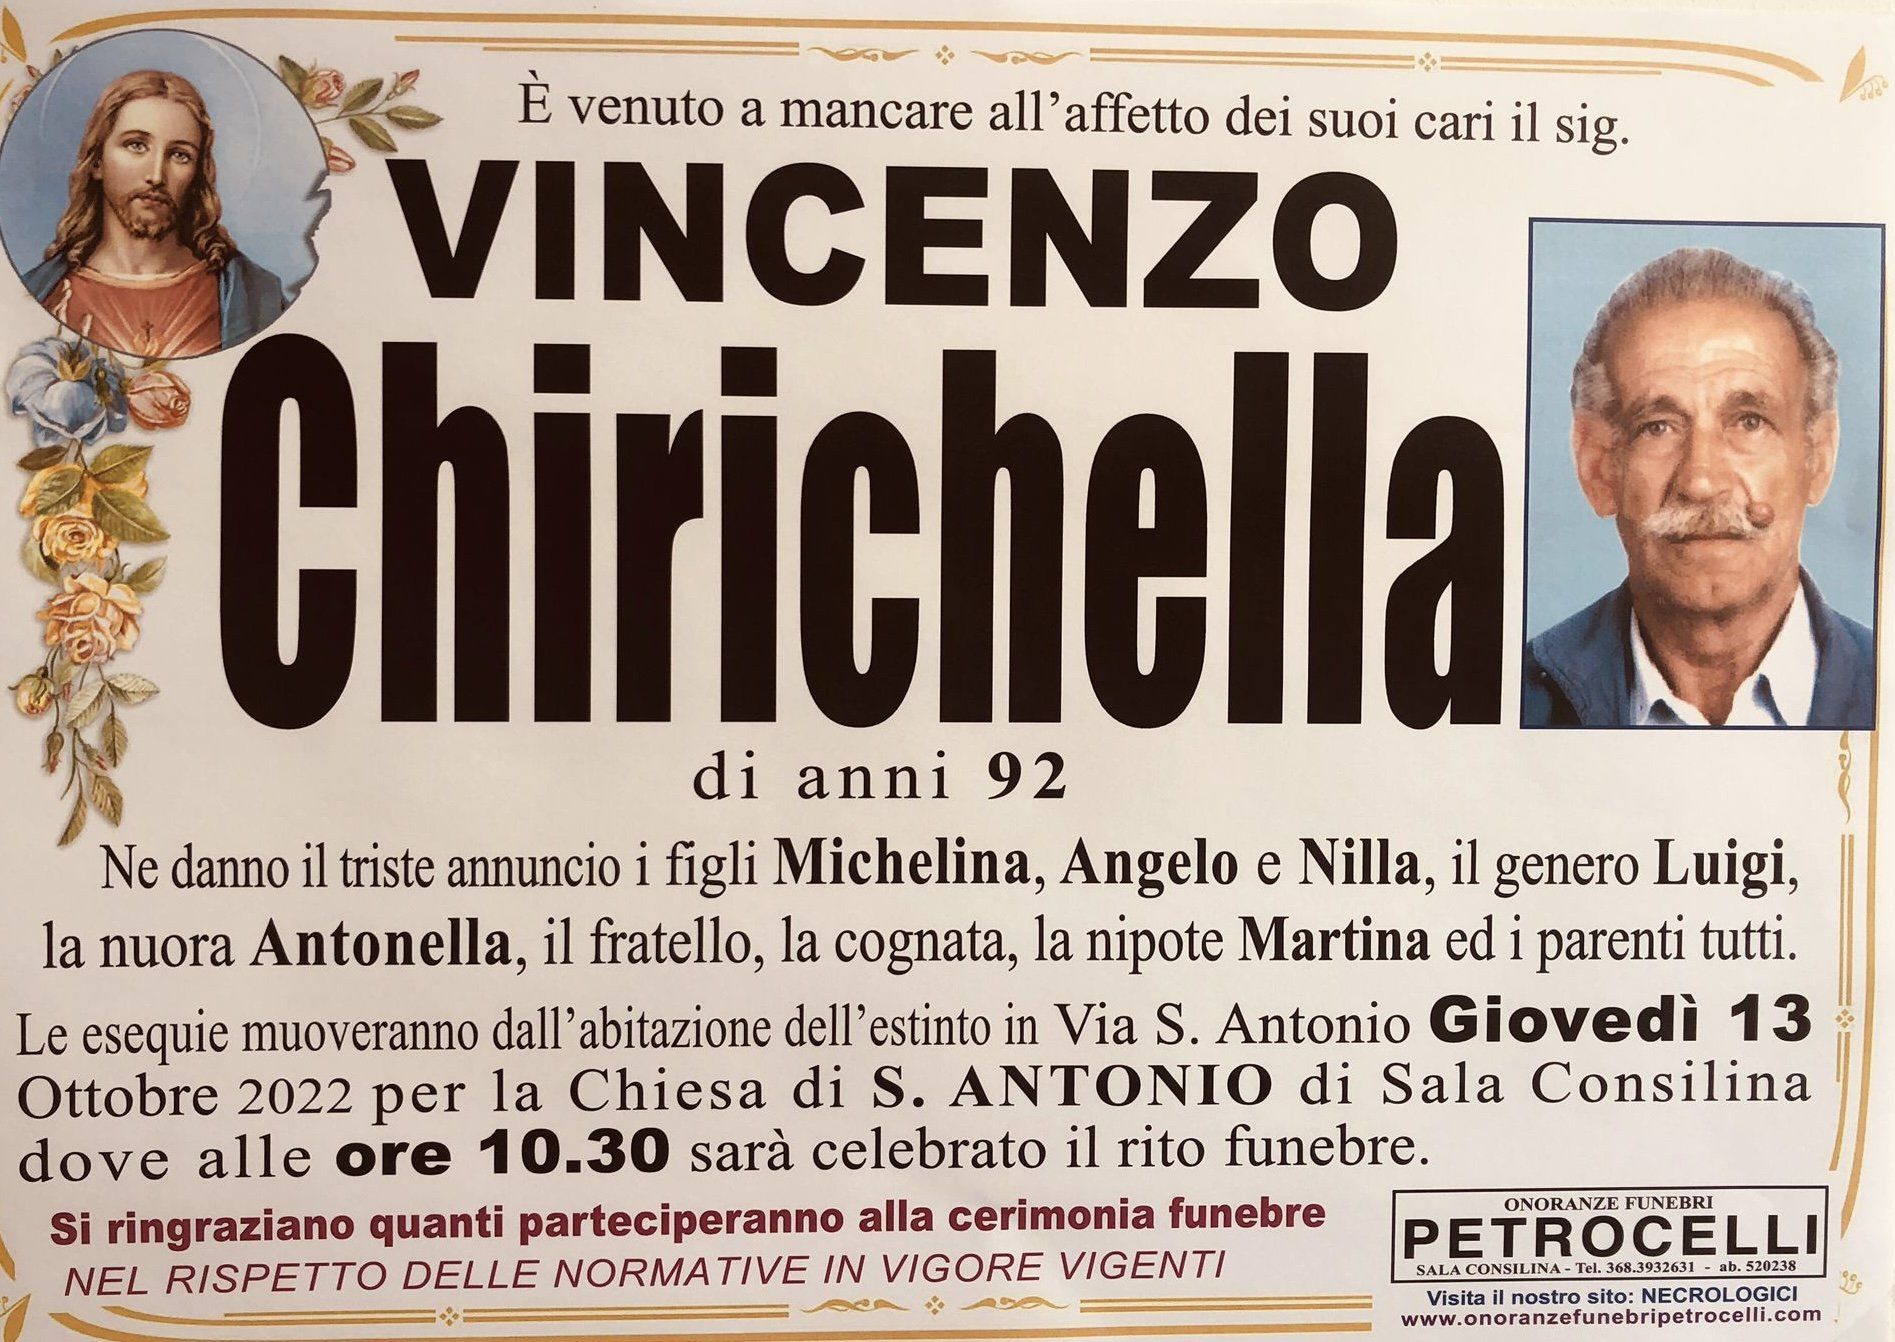 necrologio + VINCENZO CHIRICHELLA